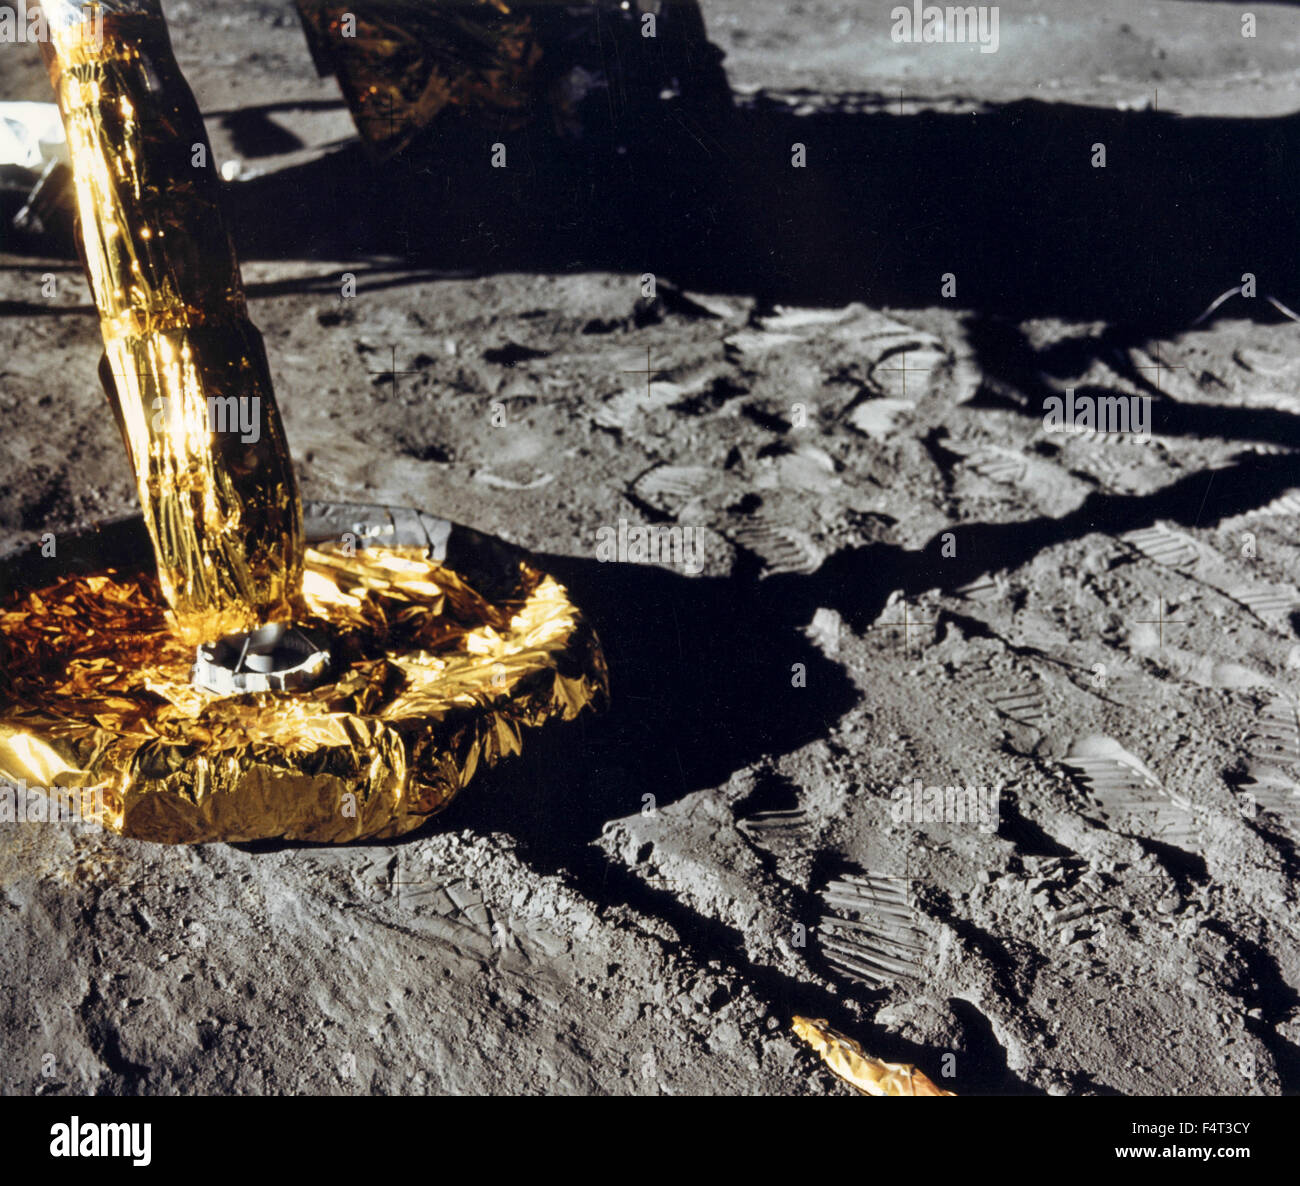 Die Mondlandefähre von Apollo 11 auf dem Mond, der Mond Stockfotografie -  Alamy